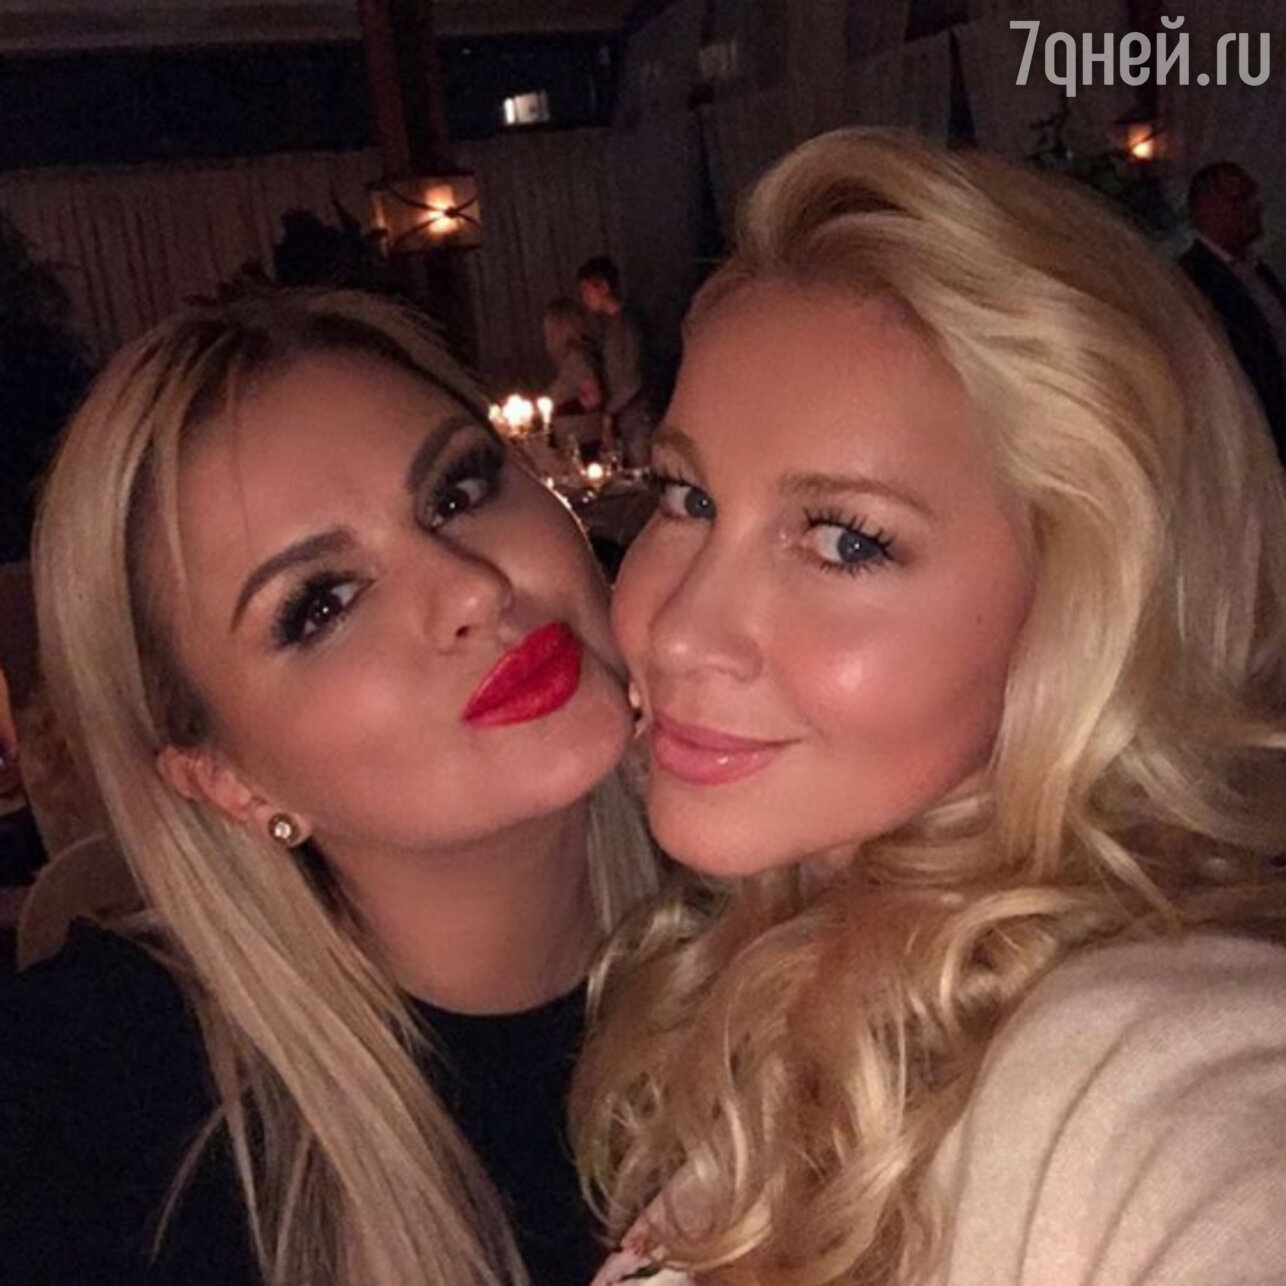 Подруга Анны Семенович рассказала правду о женихе певицы - 7Дней.ру